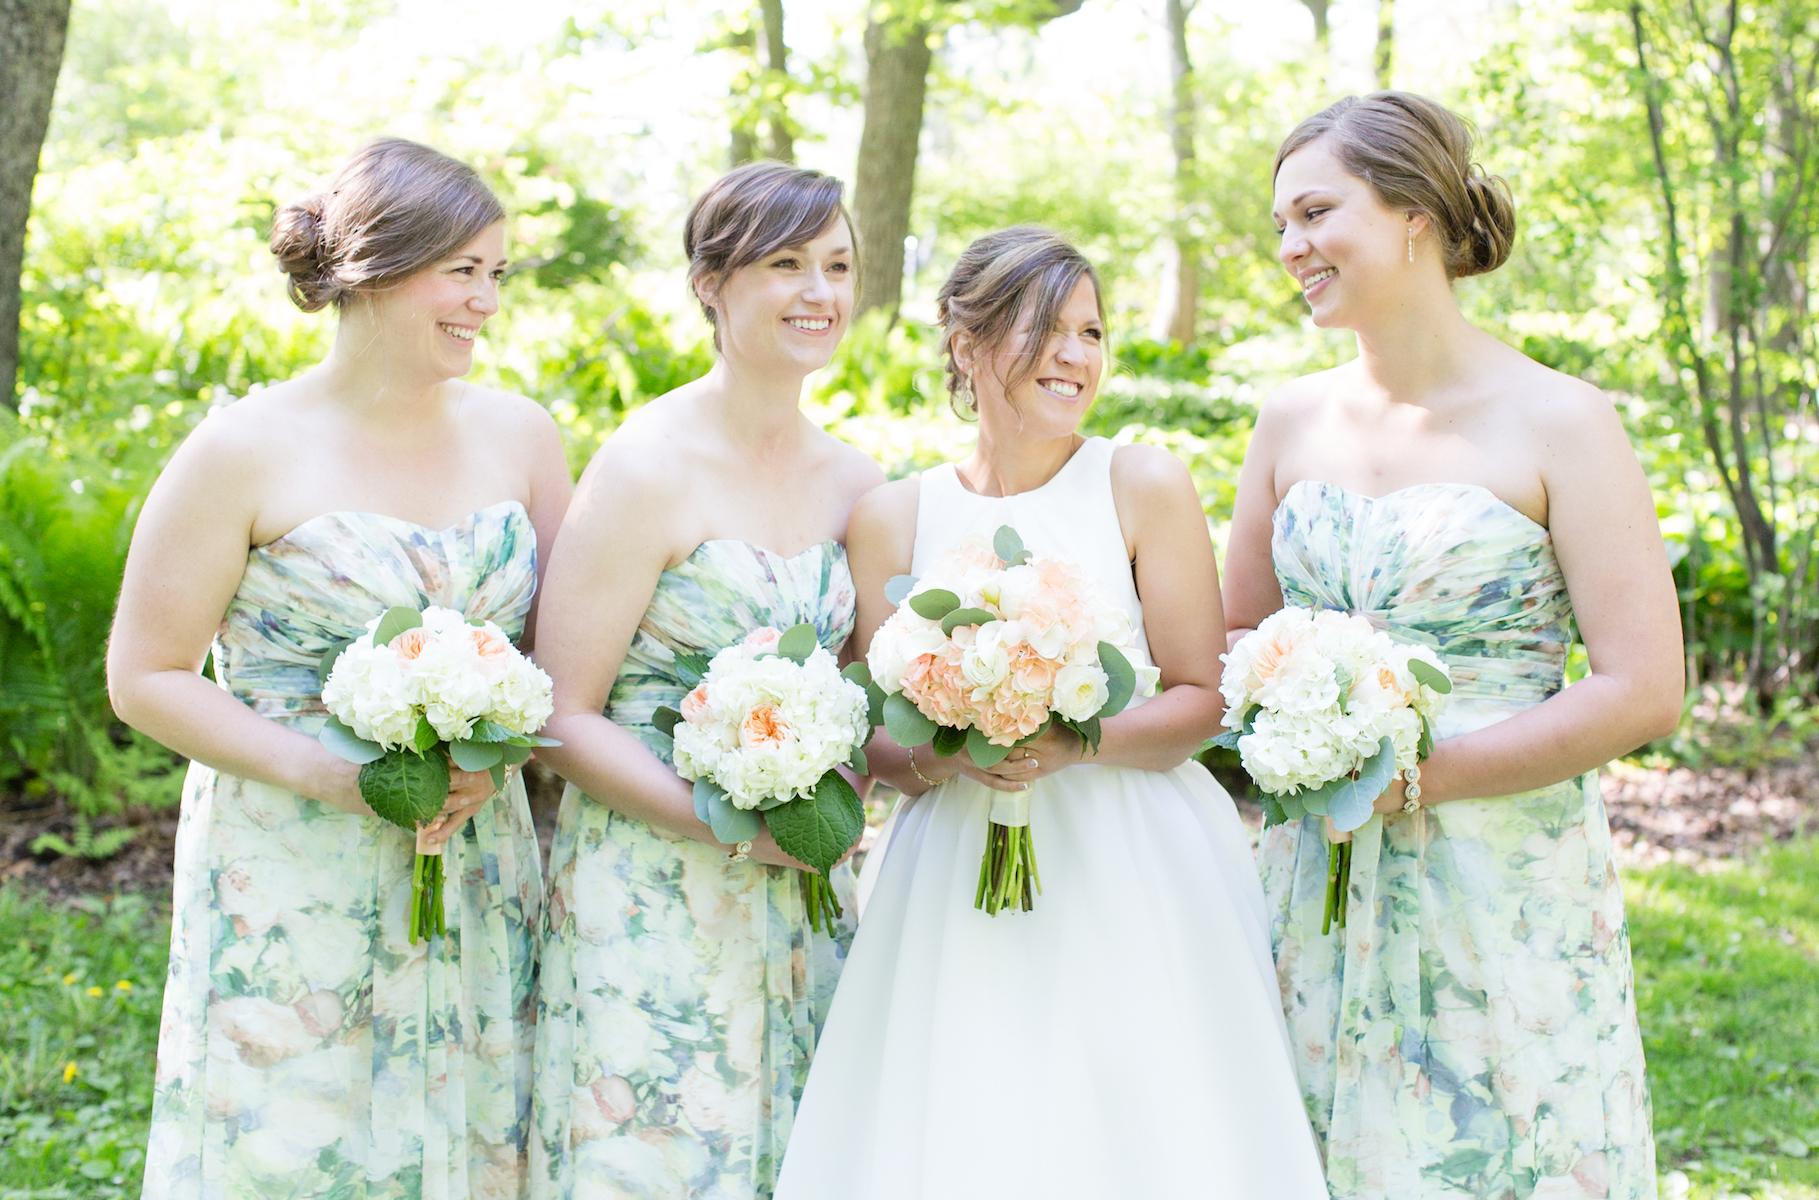 Floral Bridesmaid Dresses at a Garden Wedding